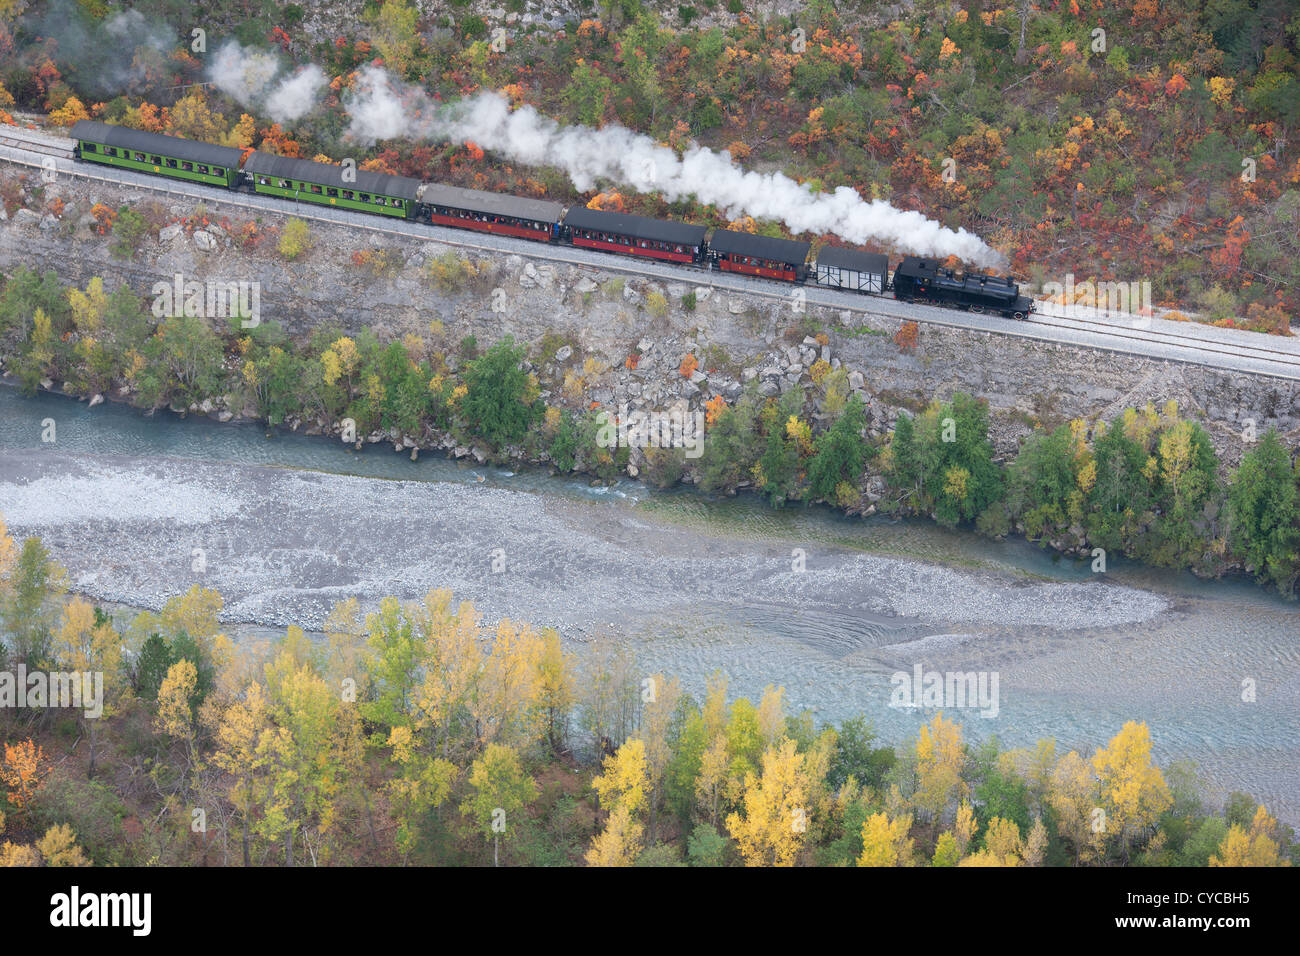 LUFTAUFNAHME. Touristische Dampfeisenbahn im malerischen Var-Tal zwischen Entrevaux und Annot. Alpes-de-Haute-Provence, Frankreich. Stockfoto